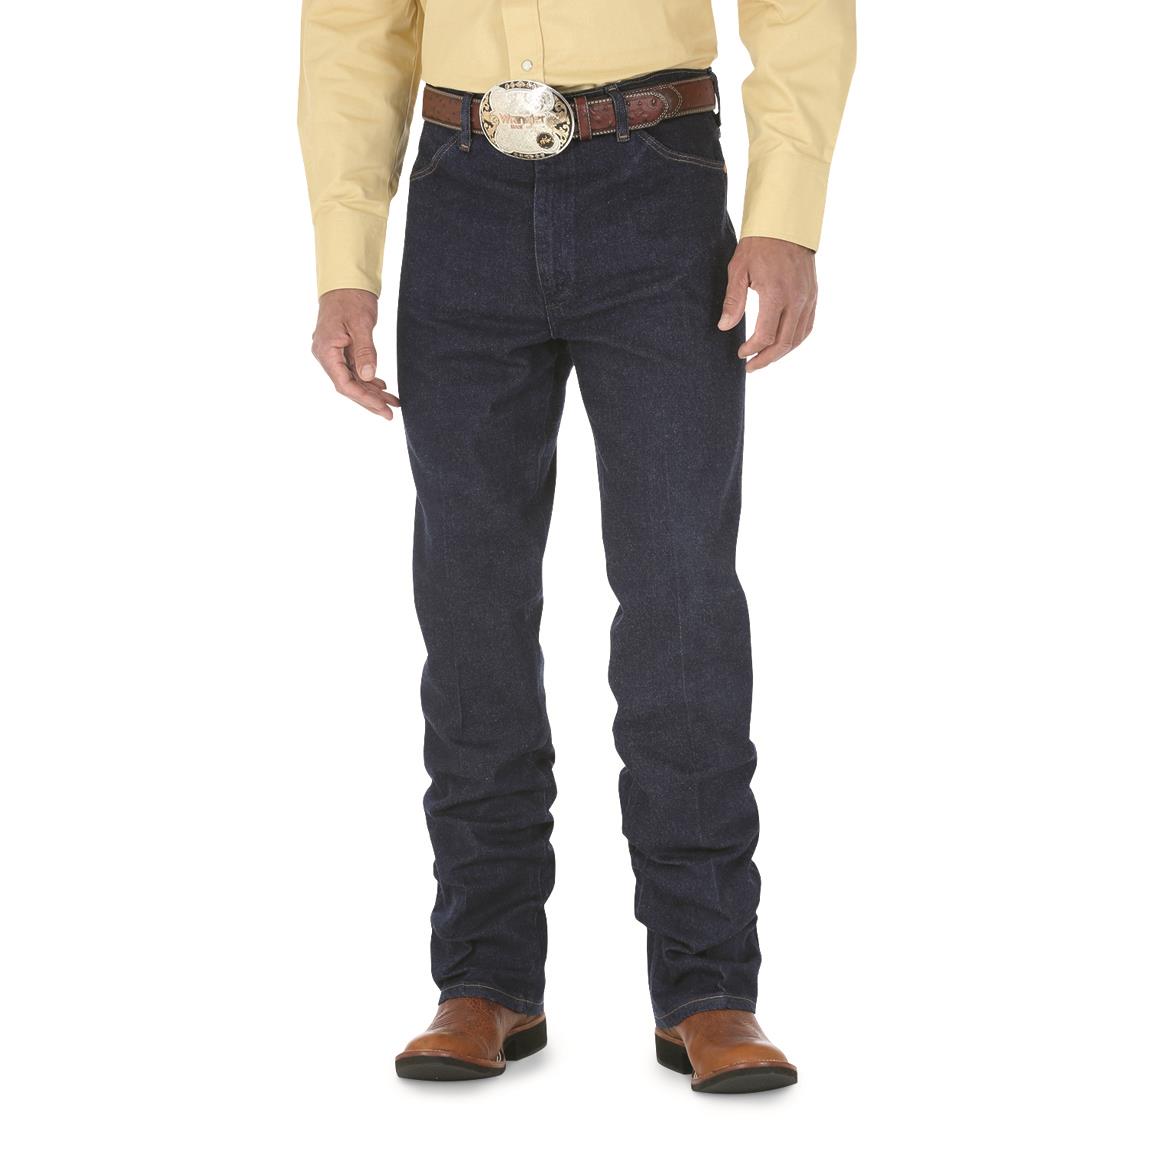 Wrangler Men's Cowboy Cut Stretch Slim Fit Jeans - 226847, Jeans ...